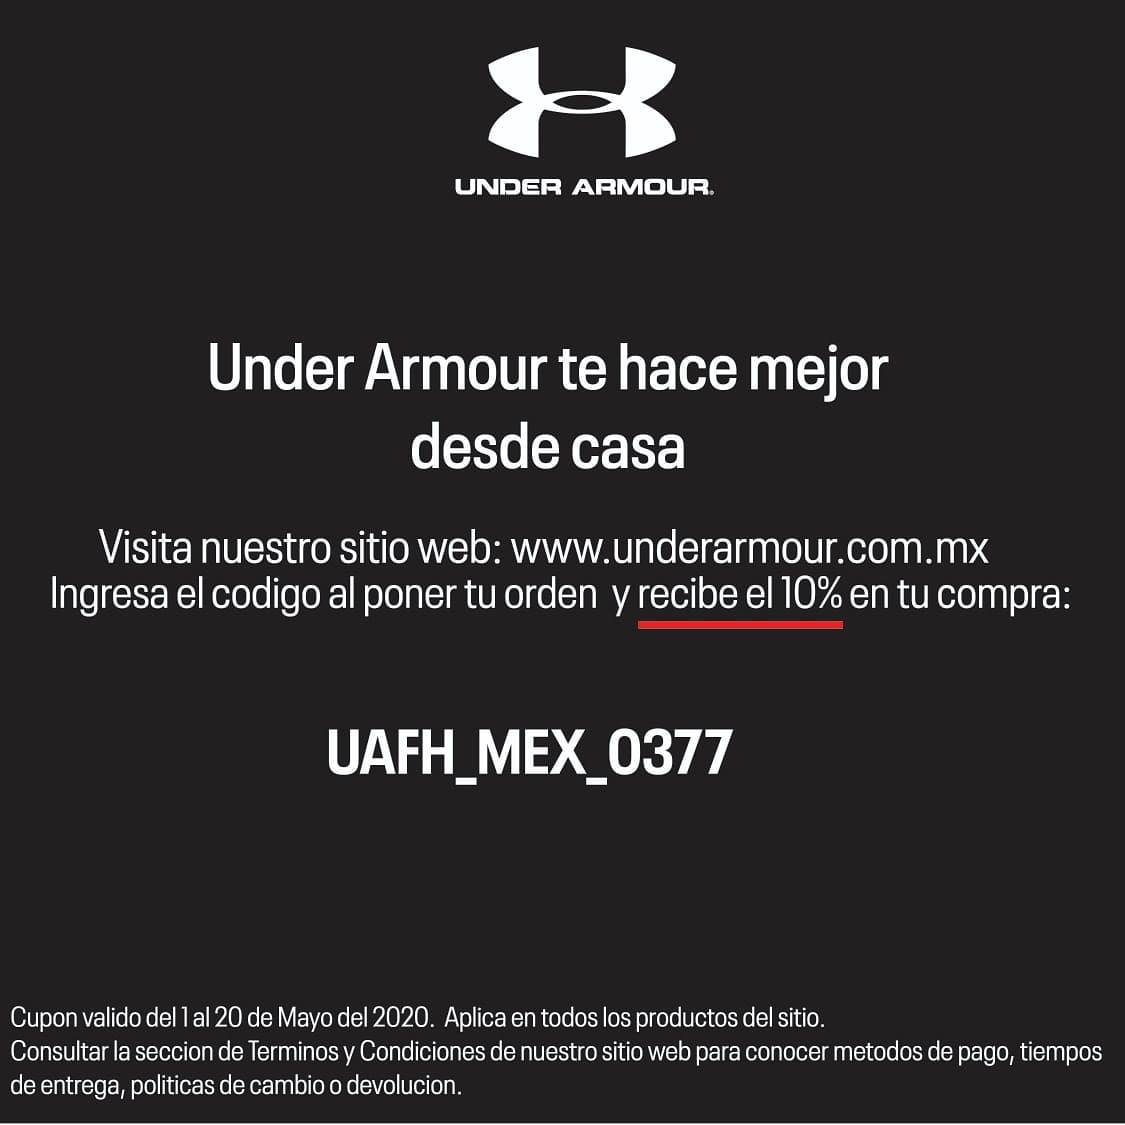 Cazaofertas on Twitter: "Cupón Under Armour 10% de descuento adicional la tienda en línea https://t.co/TMwS9aFS8Y #Oferta #promocion #México #ofertas #promociones #descuentos #Cazaofertas https://t.co/TBnv2e07cv" / Twitter